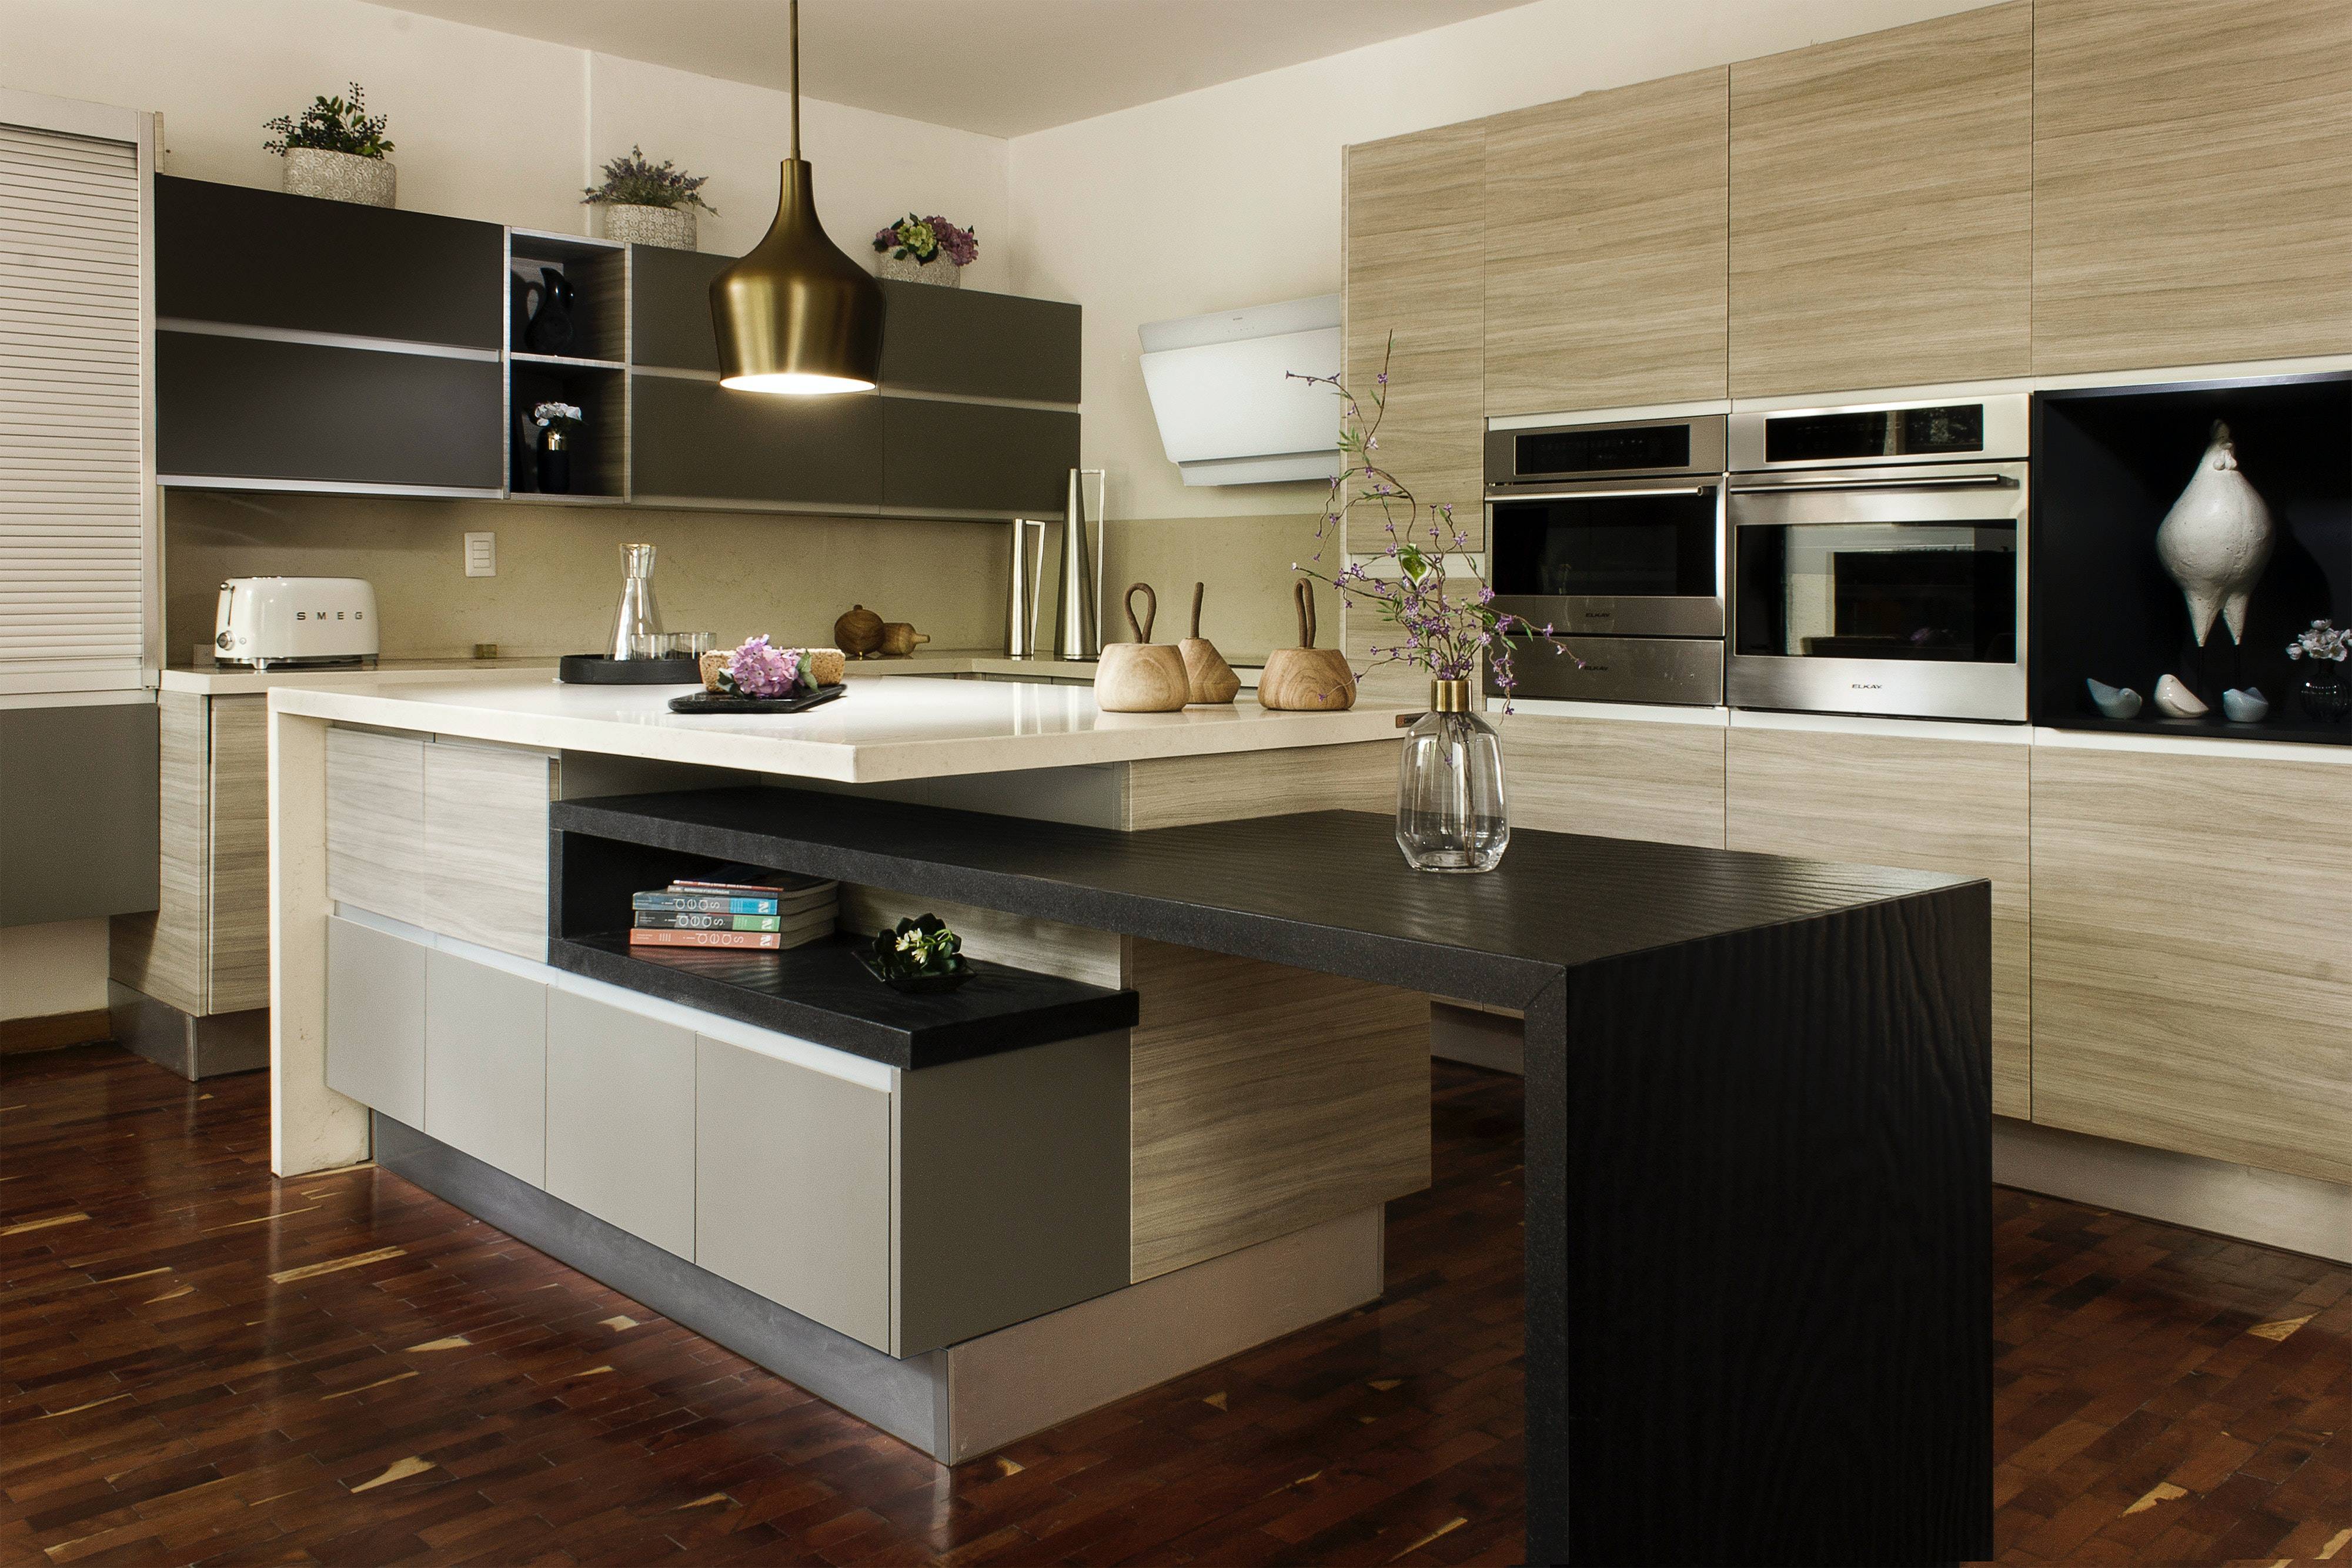 Comment réaliser un design moderne pour votre cuisine ?